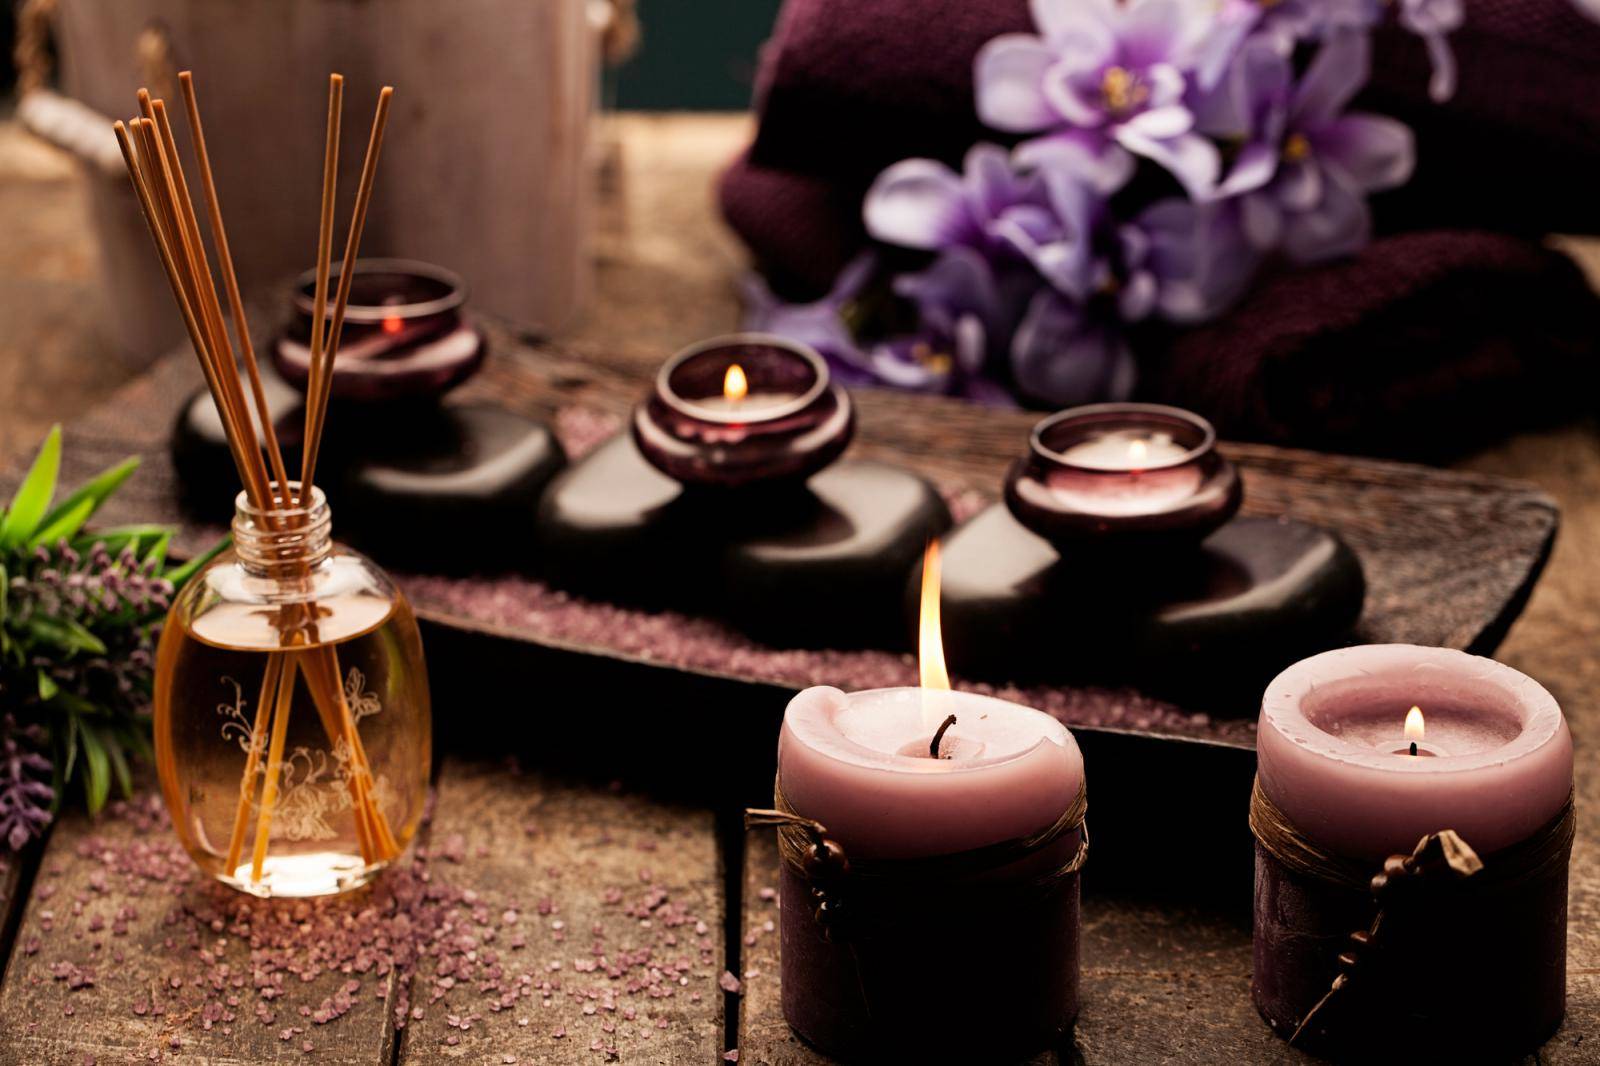 Aromaterapia promove saúde e bem-estar por meio de cheiros